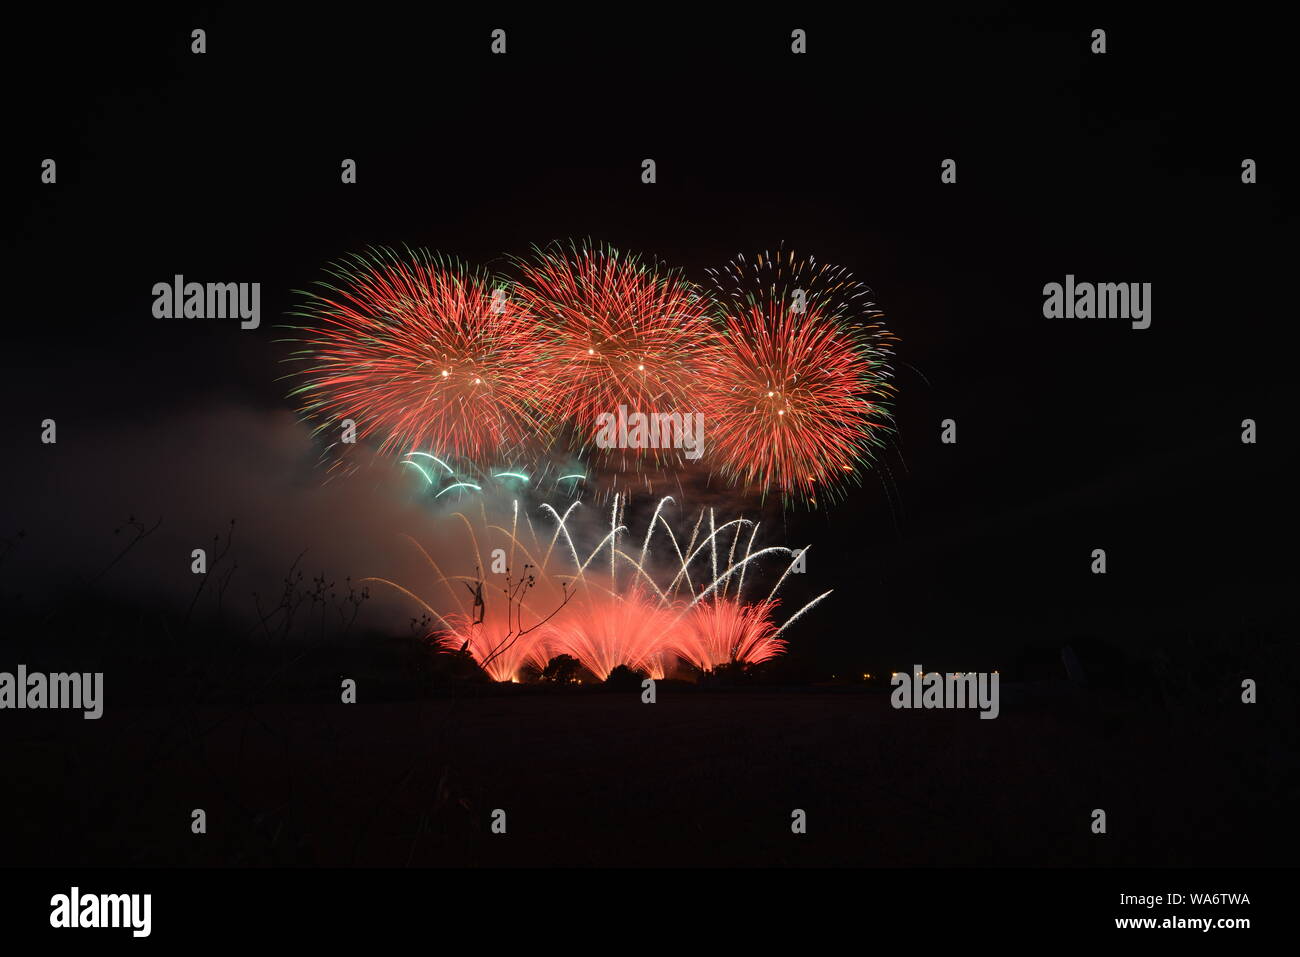 Fireworks display in Zurrieq, Malta Stock Photo